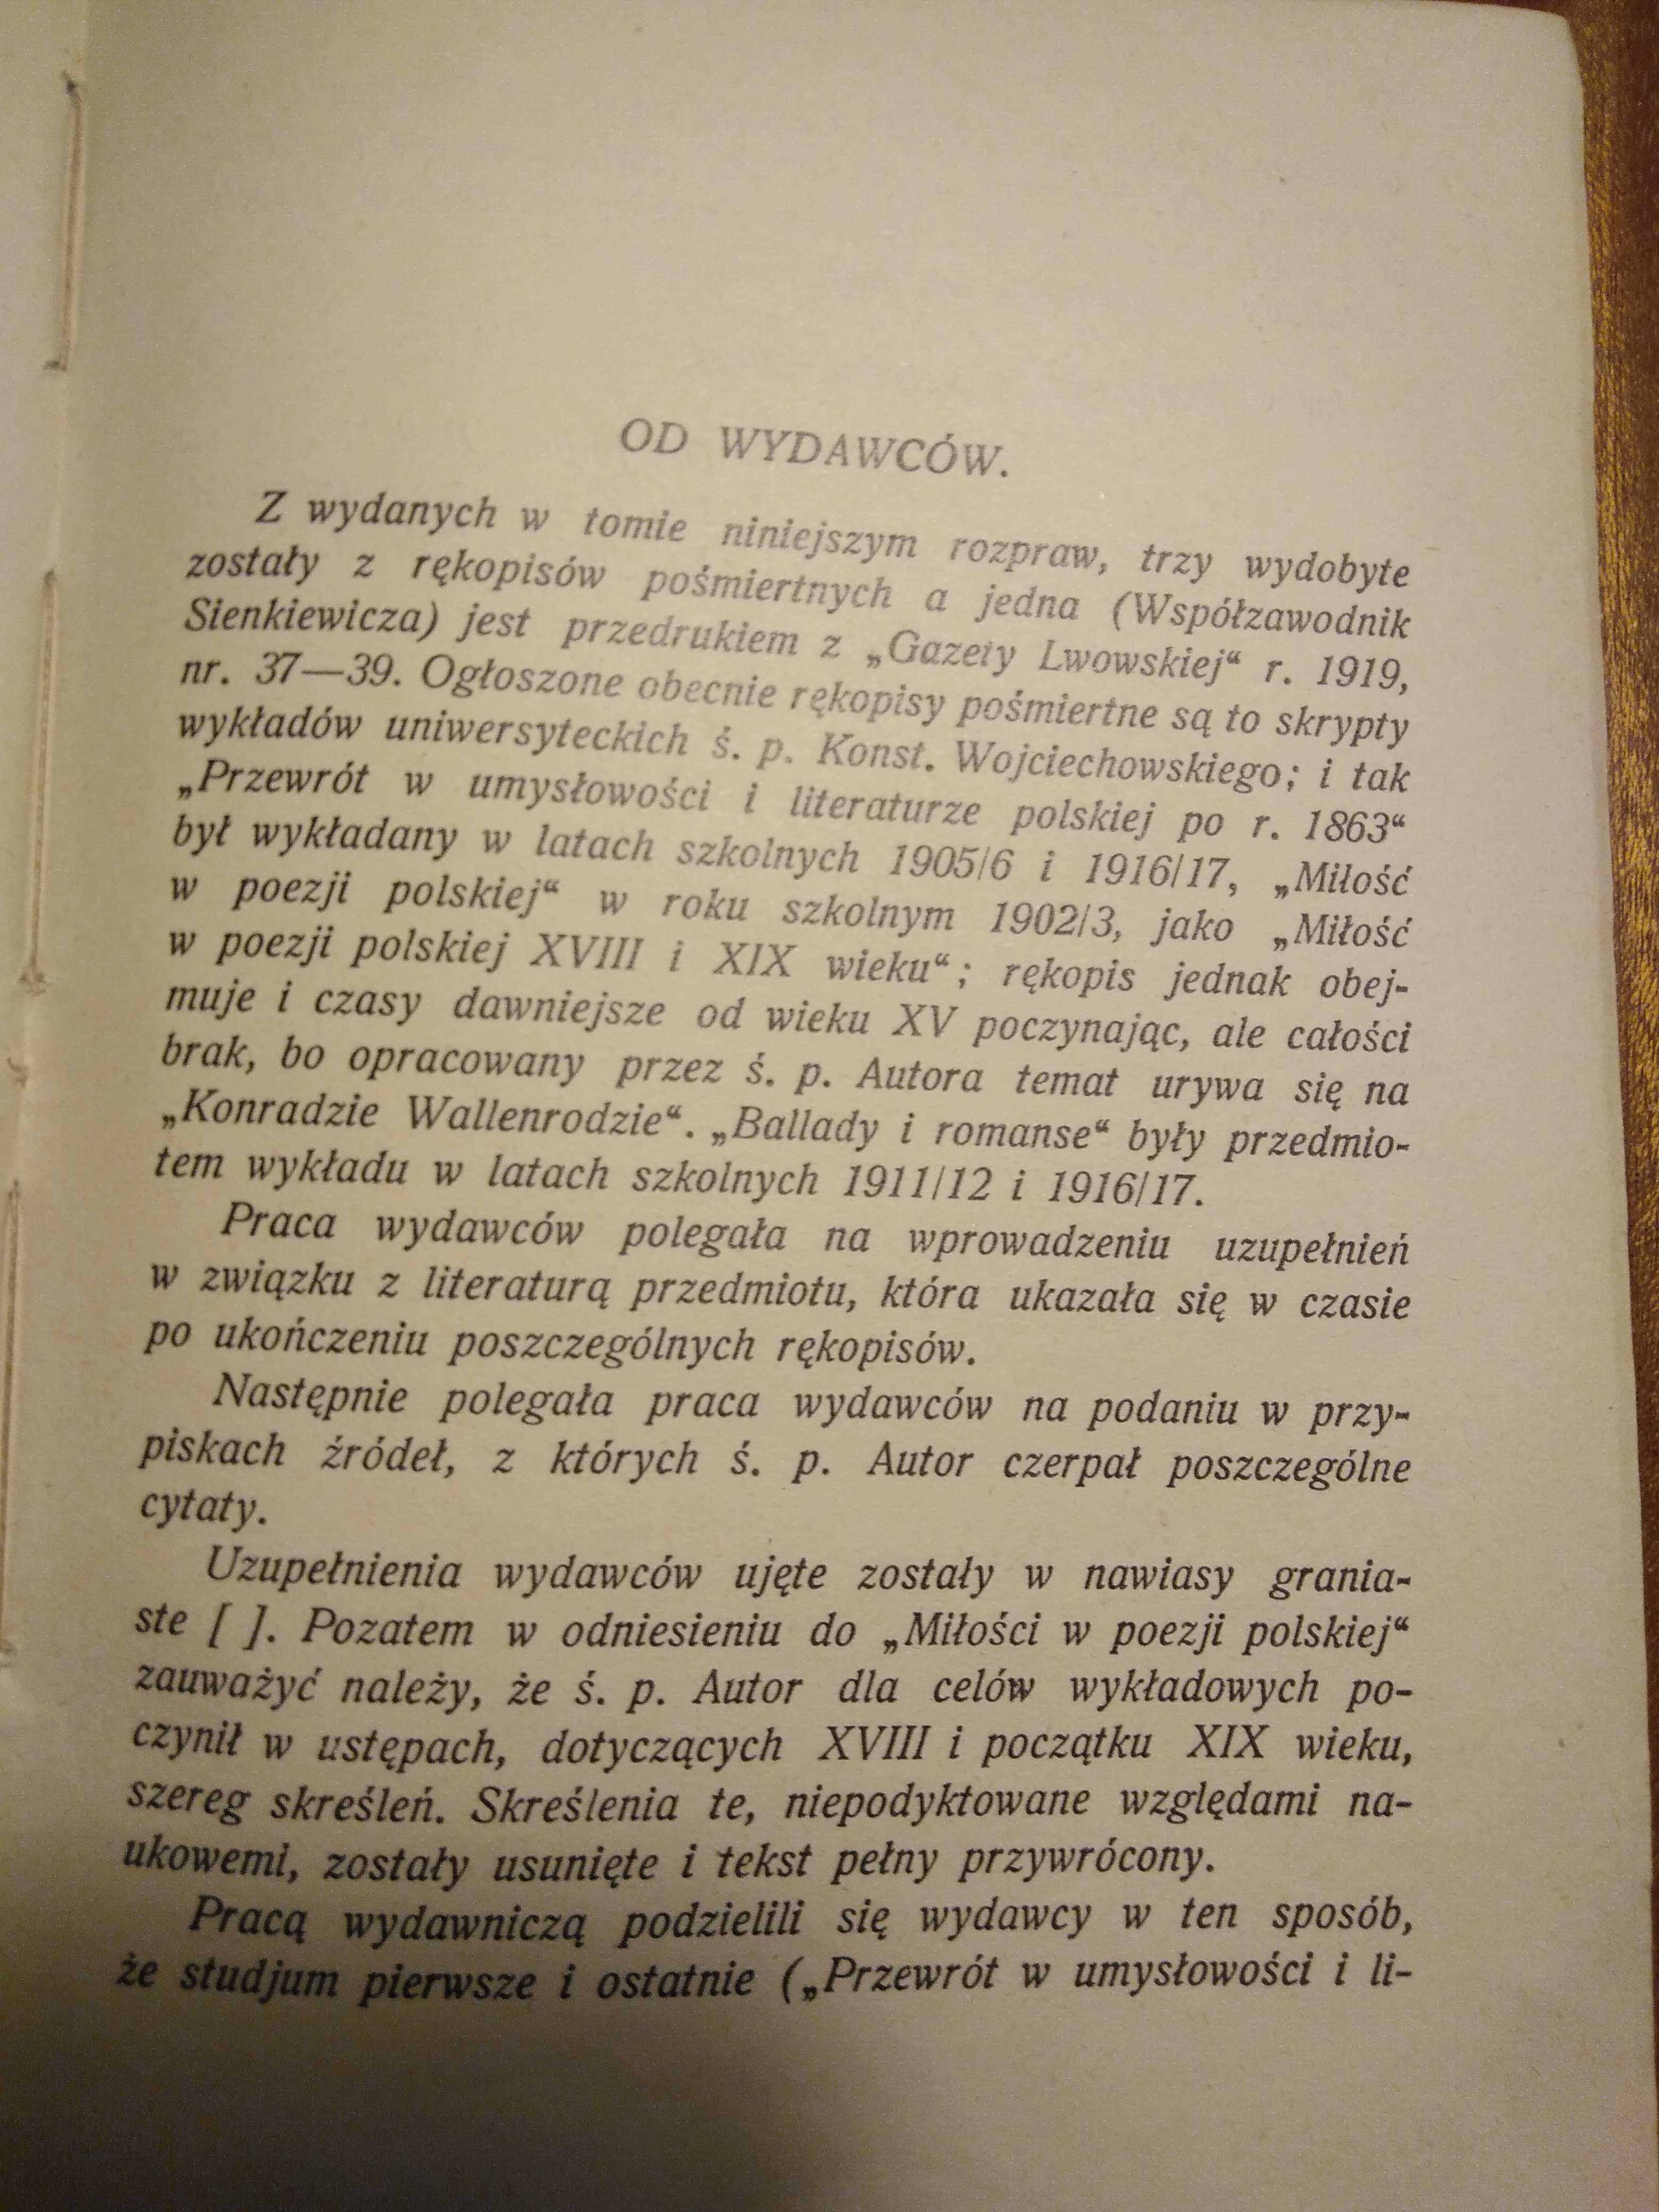 Przewrót w umysłowości i literaturze polskiej po roku 1863